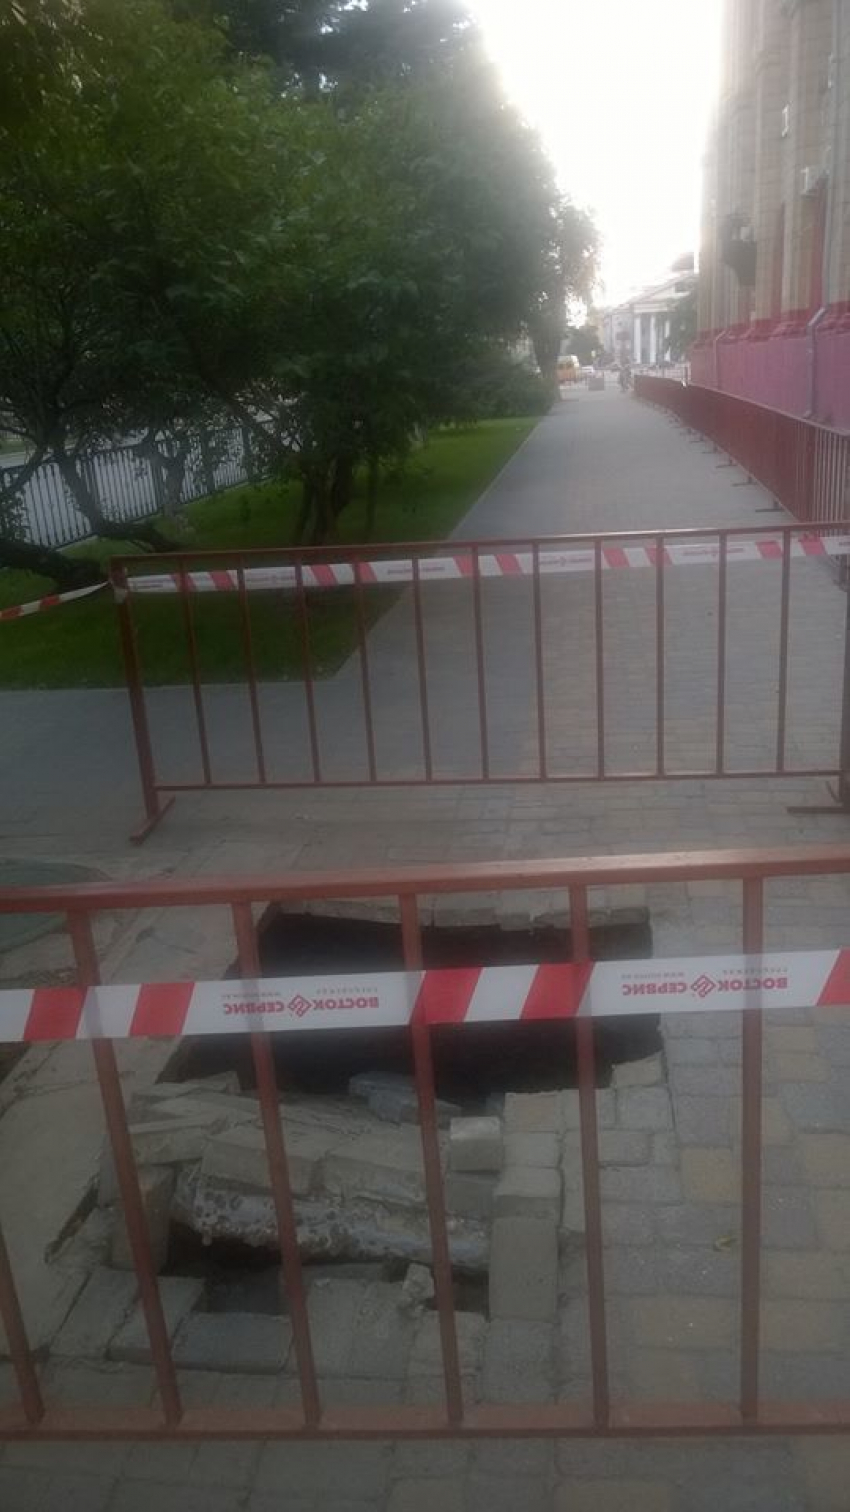 В центре Волгограда возле Главпочтамта провалился тротуар